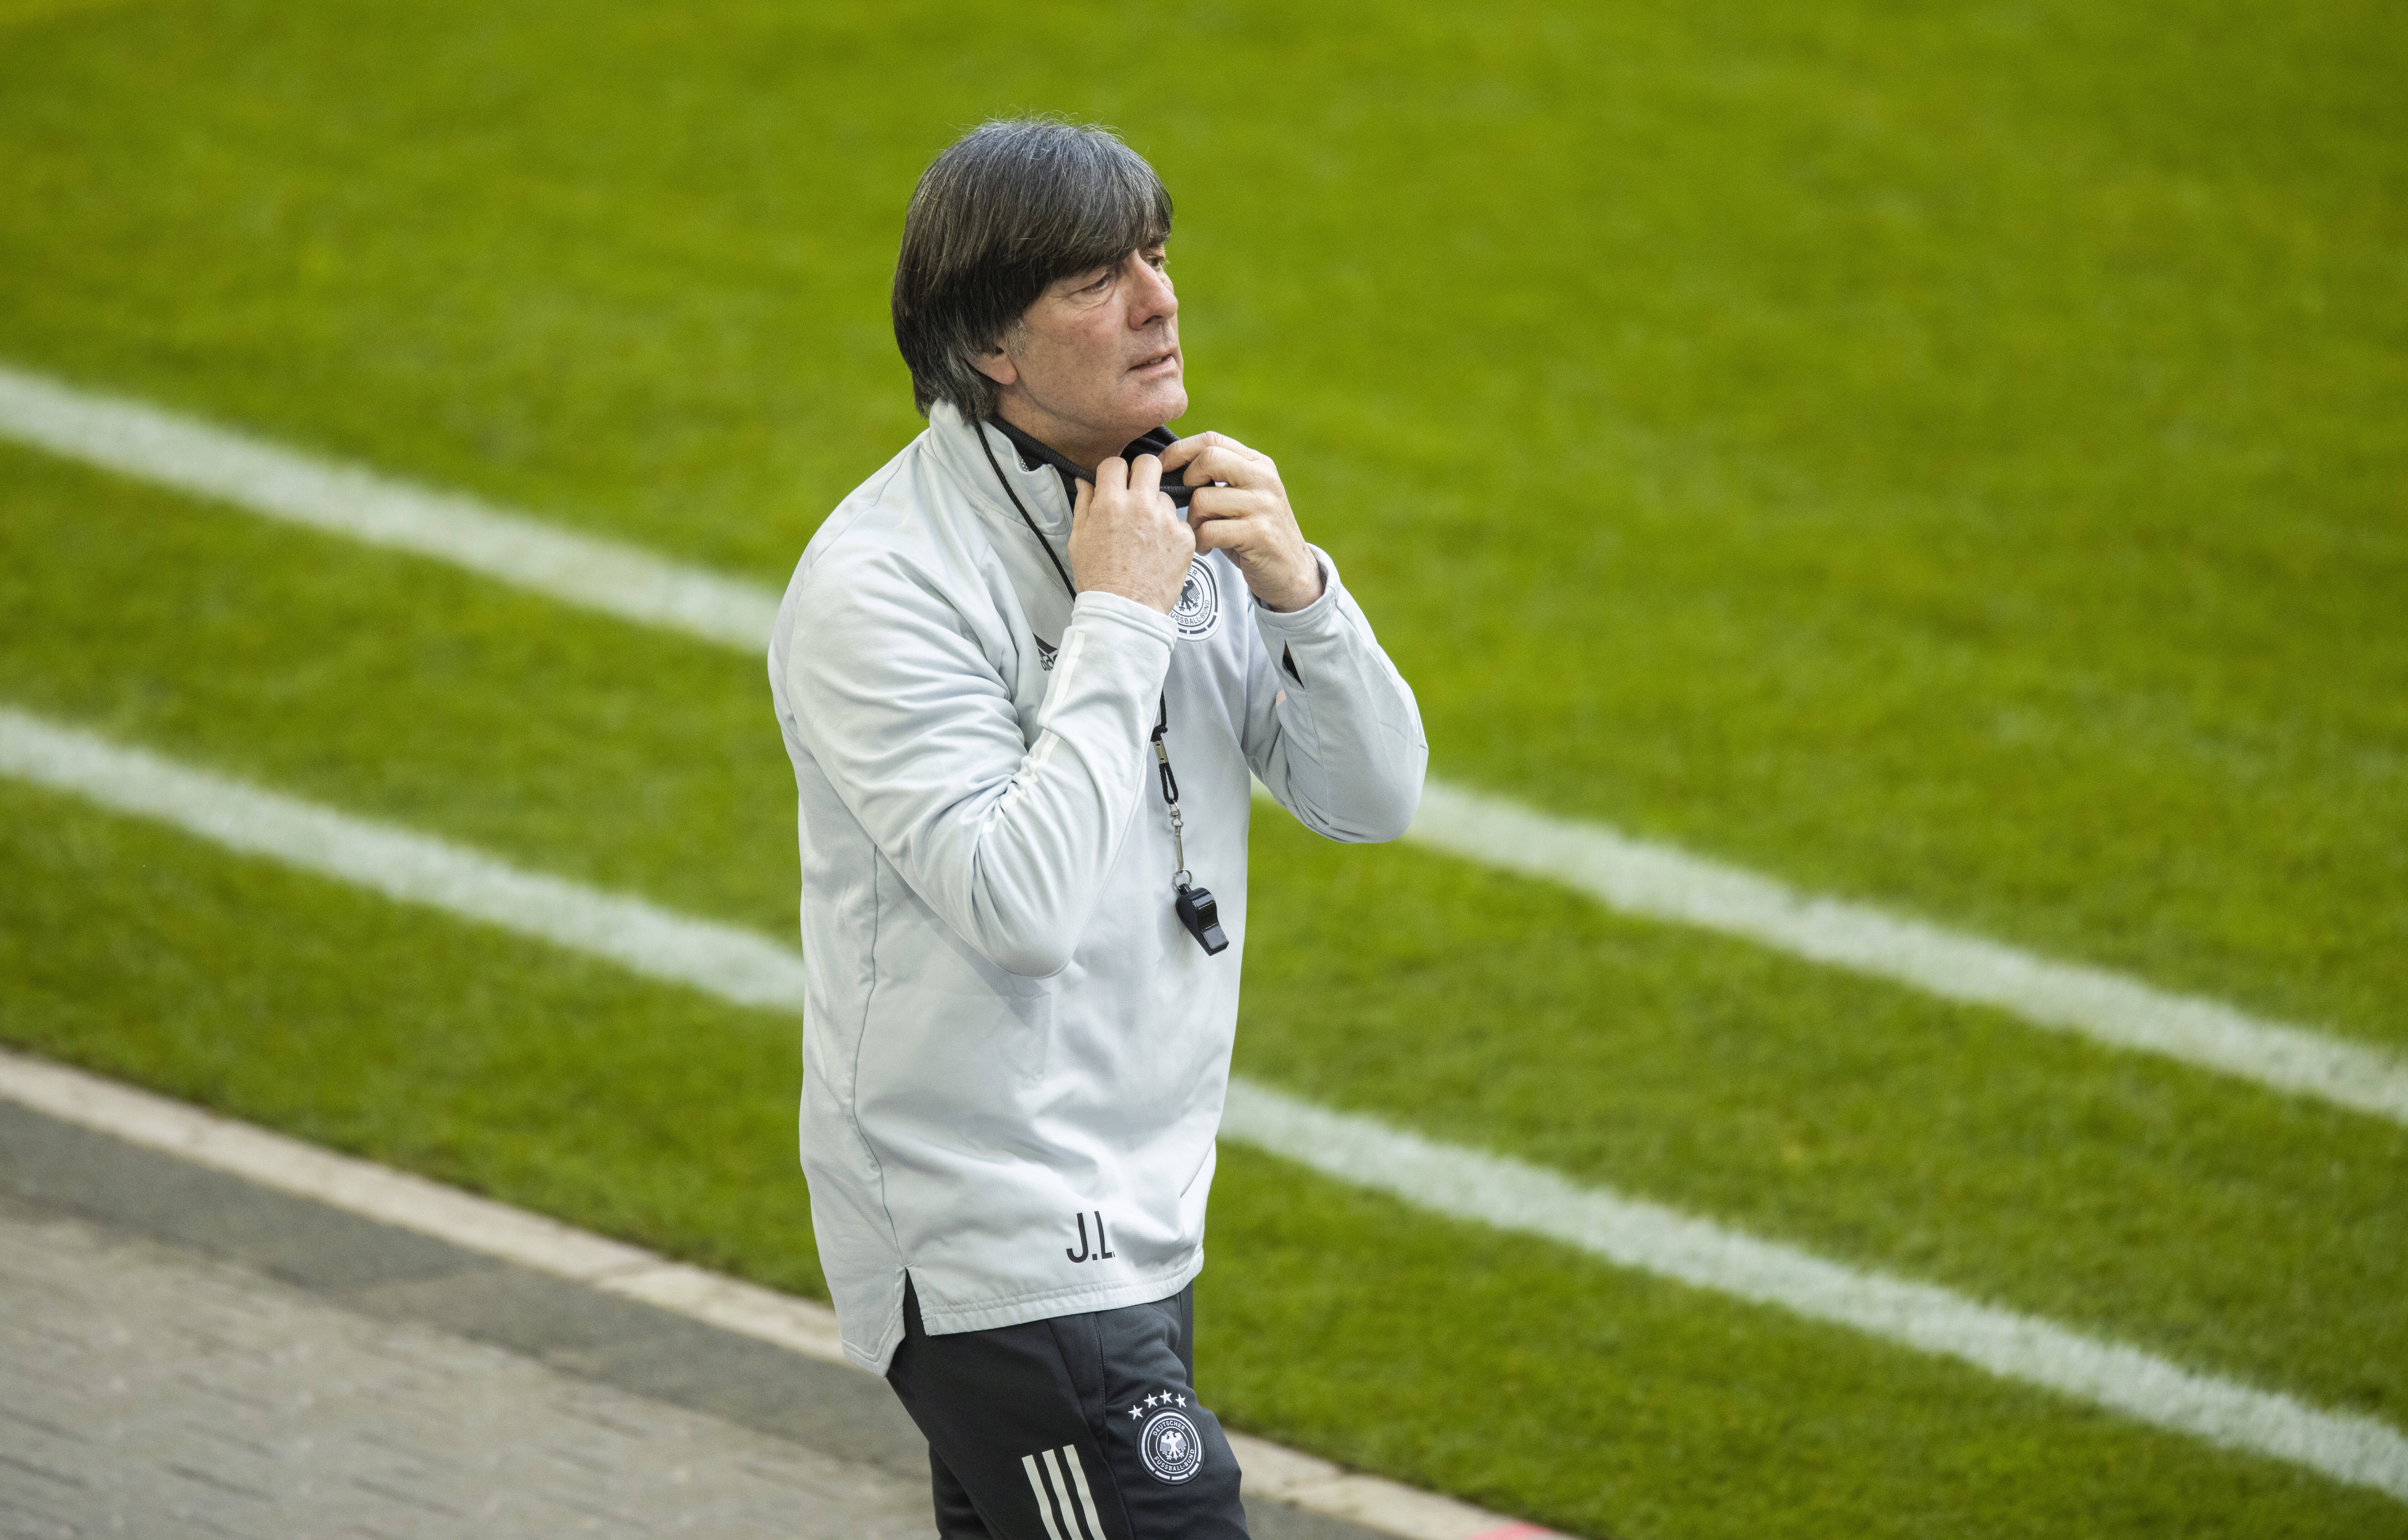 DFB-Trainer Löw: Keine Gespräche über Zukunft vor dem Ende der EM